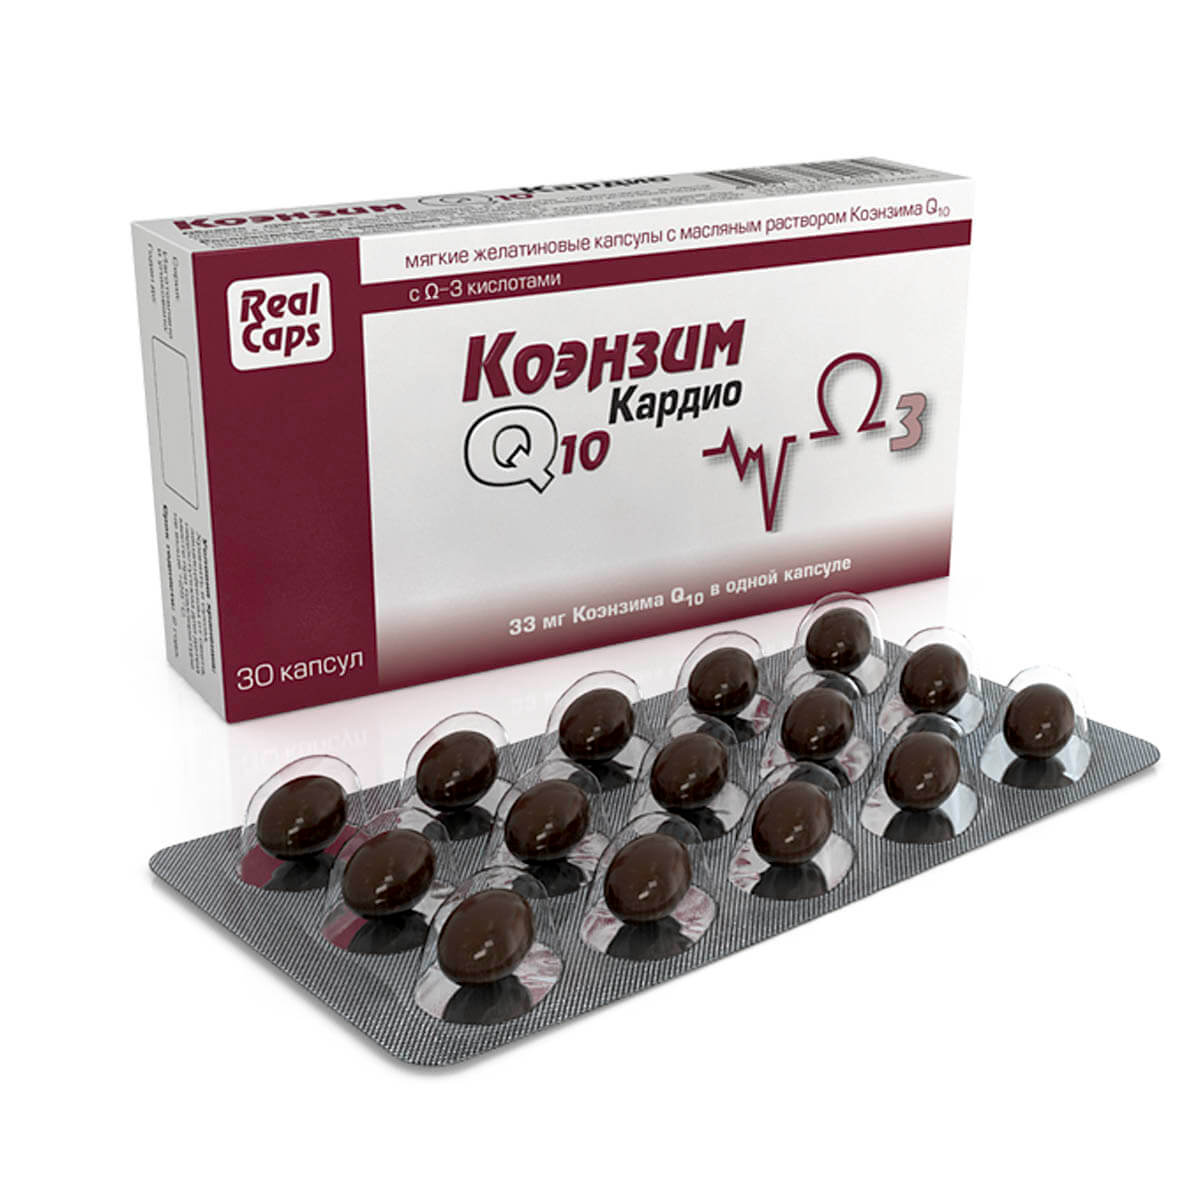 Коэнзим Q10 Кардио капс, 500 мг, 30 капсул, РеалКапс